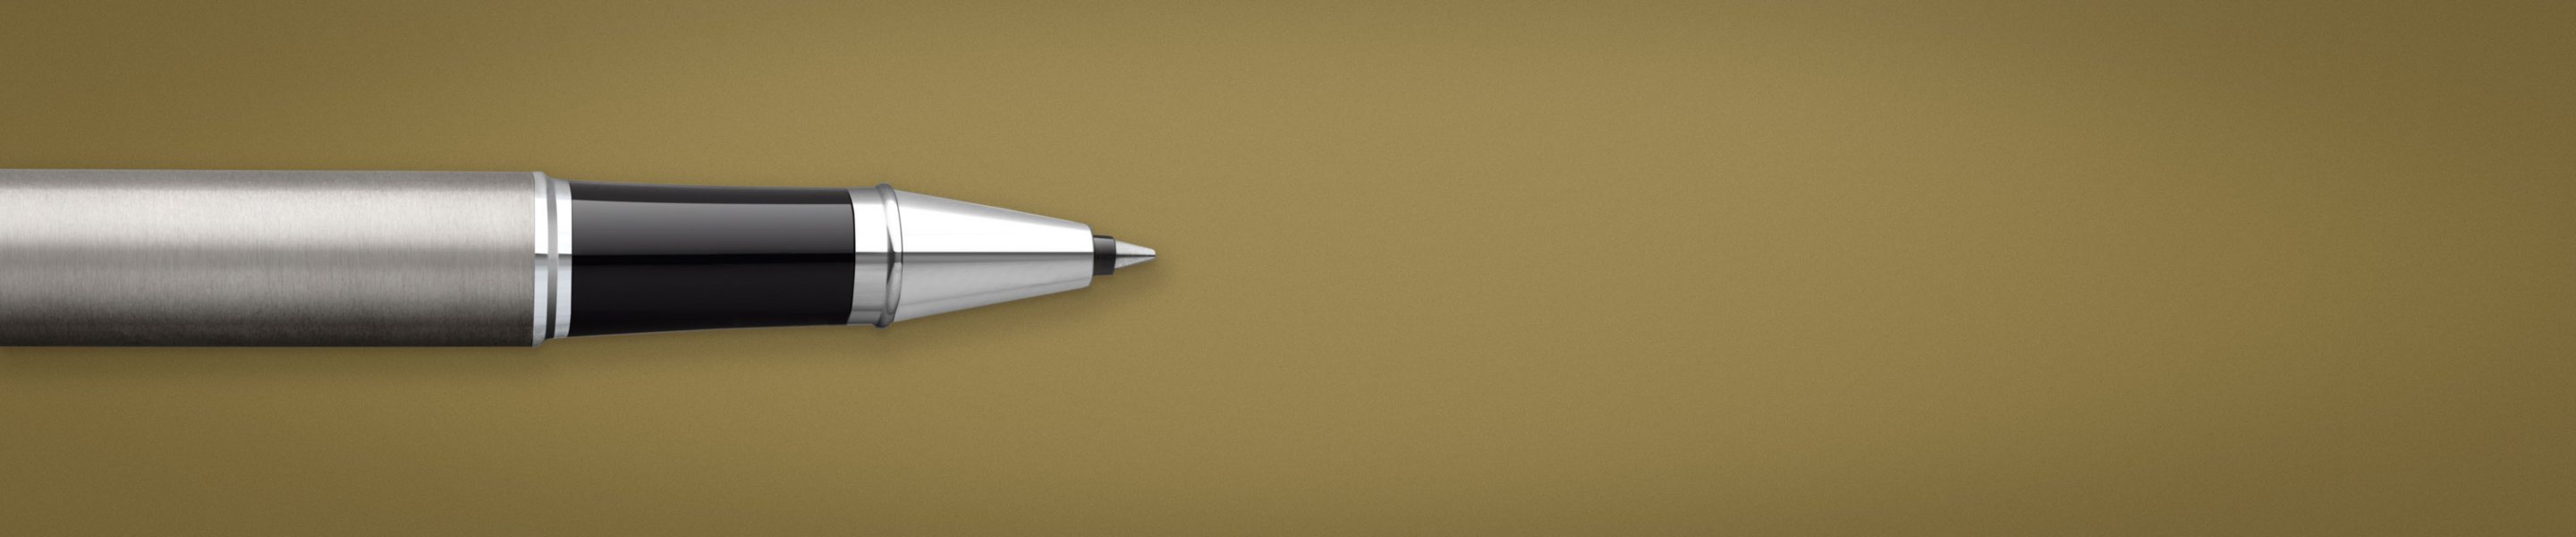 a metallic pen